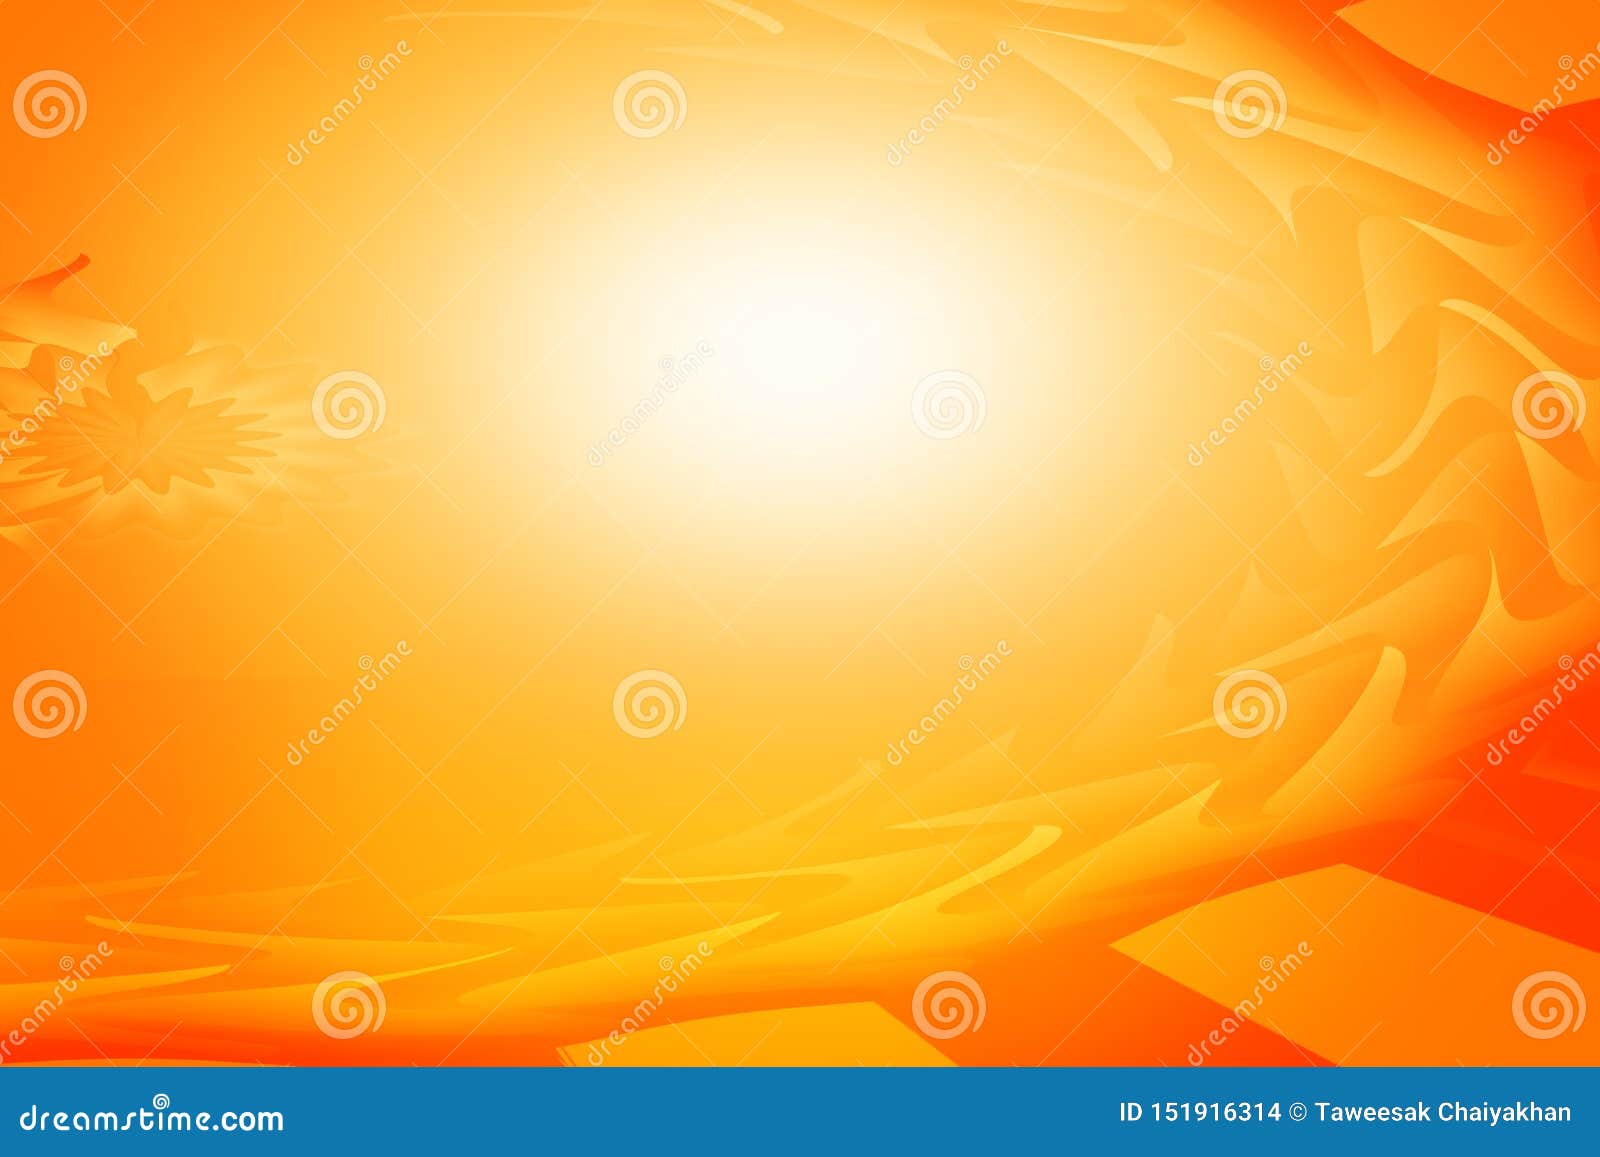 Nếu bạn đang tìm kiếm một bức ảnh với nền trừu tượng màu cam, sáng và rực rỡ thì đây chính là điểm đến của bạn! Màu cam ánh sáng kết hợp với trừu tượng tạo nên một hiệu ứng đẹp mắt và bắt mắt.